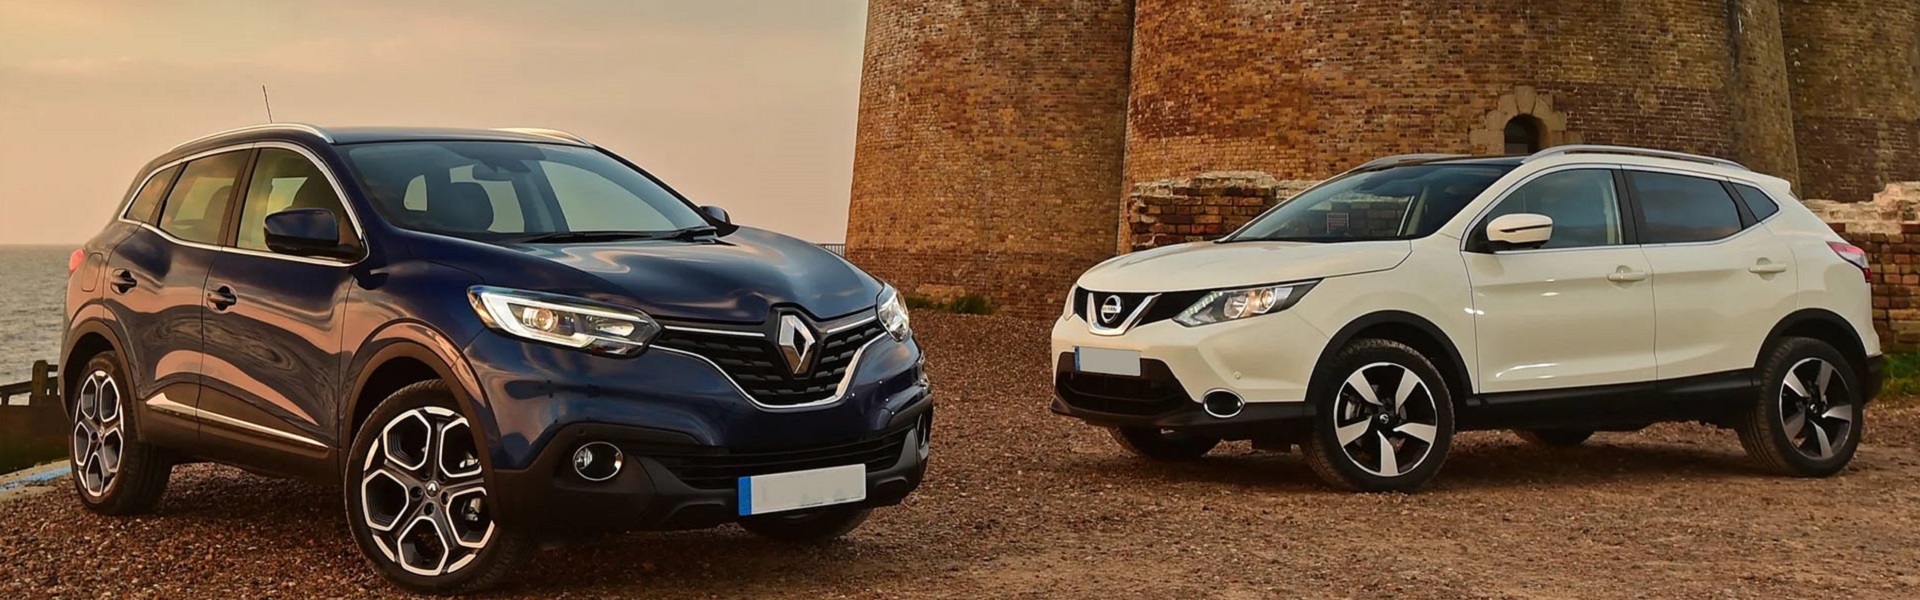 Rent a car Belgrade | Renault, Dacia and Nissan vehicles sale